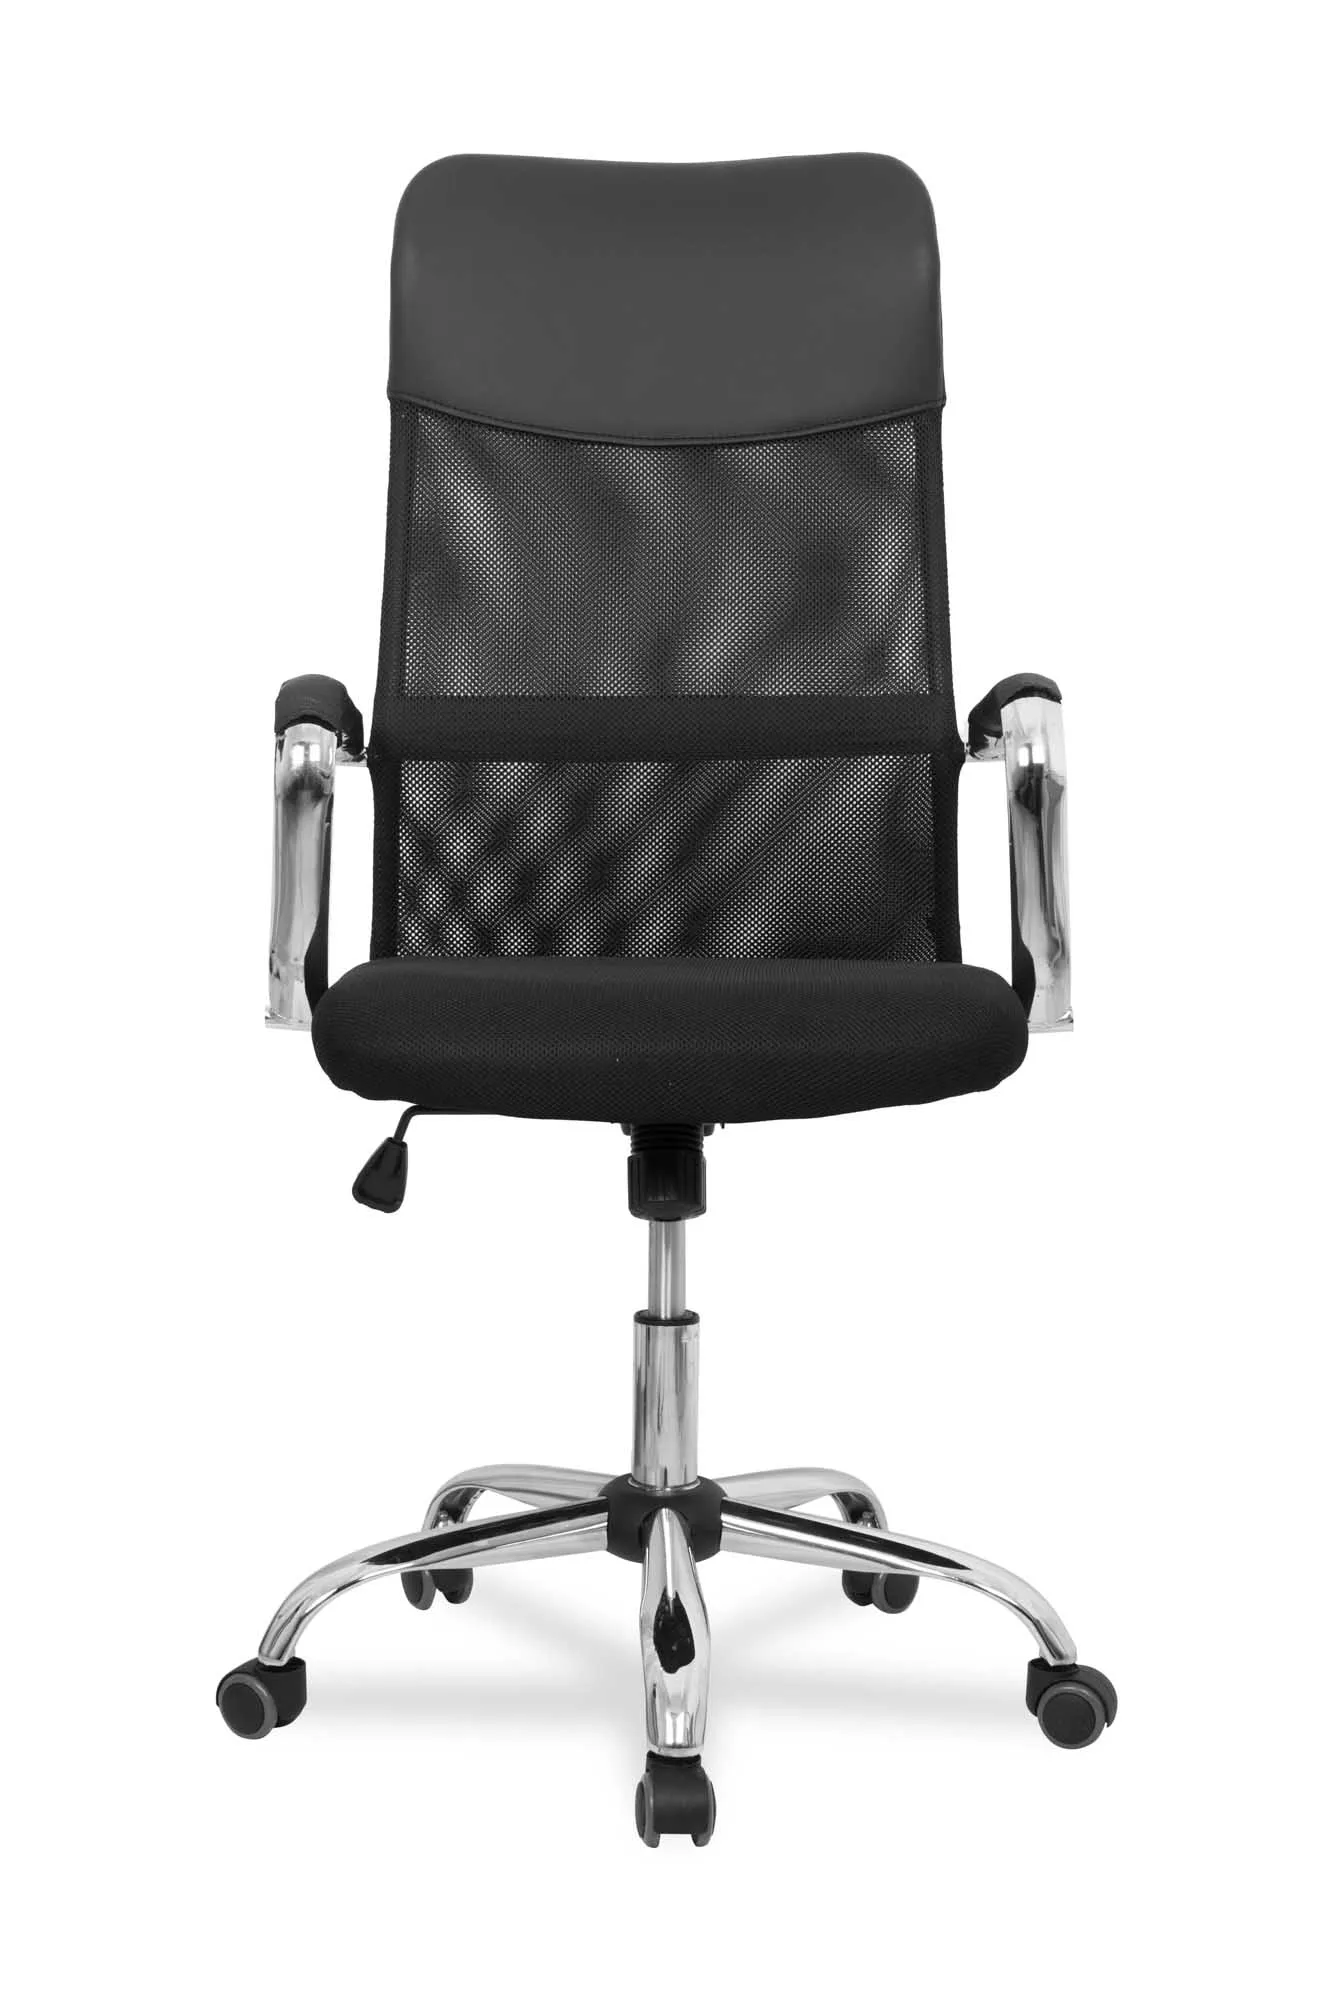 Компьютерное кресло College CLG-419 MXH Черный